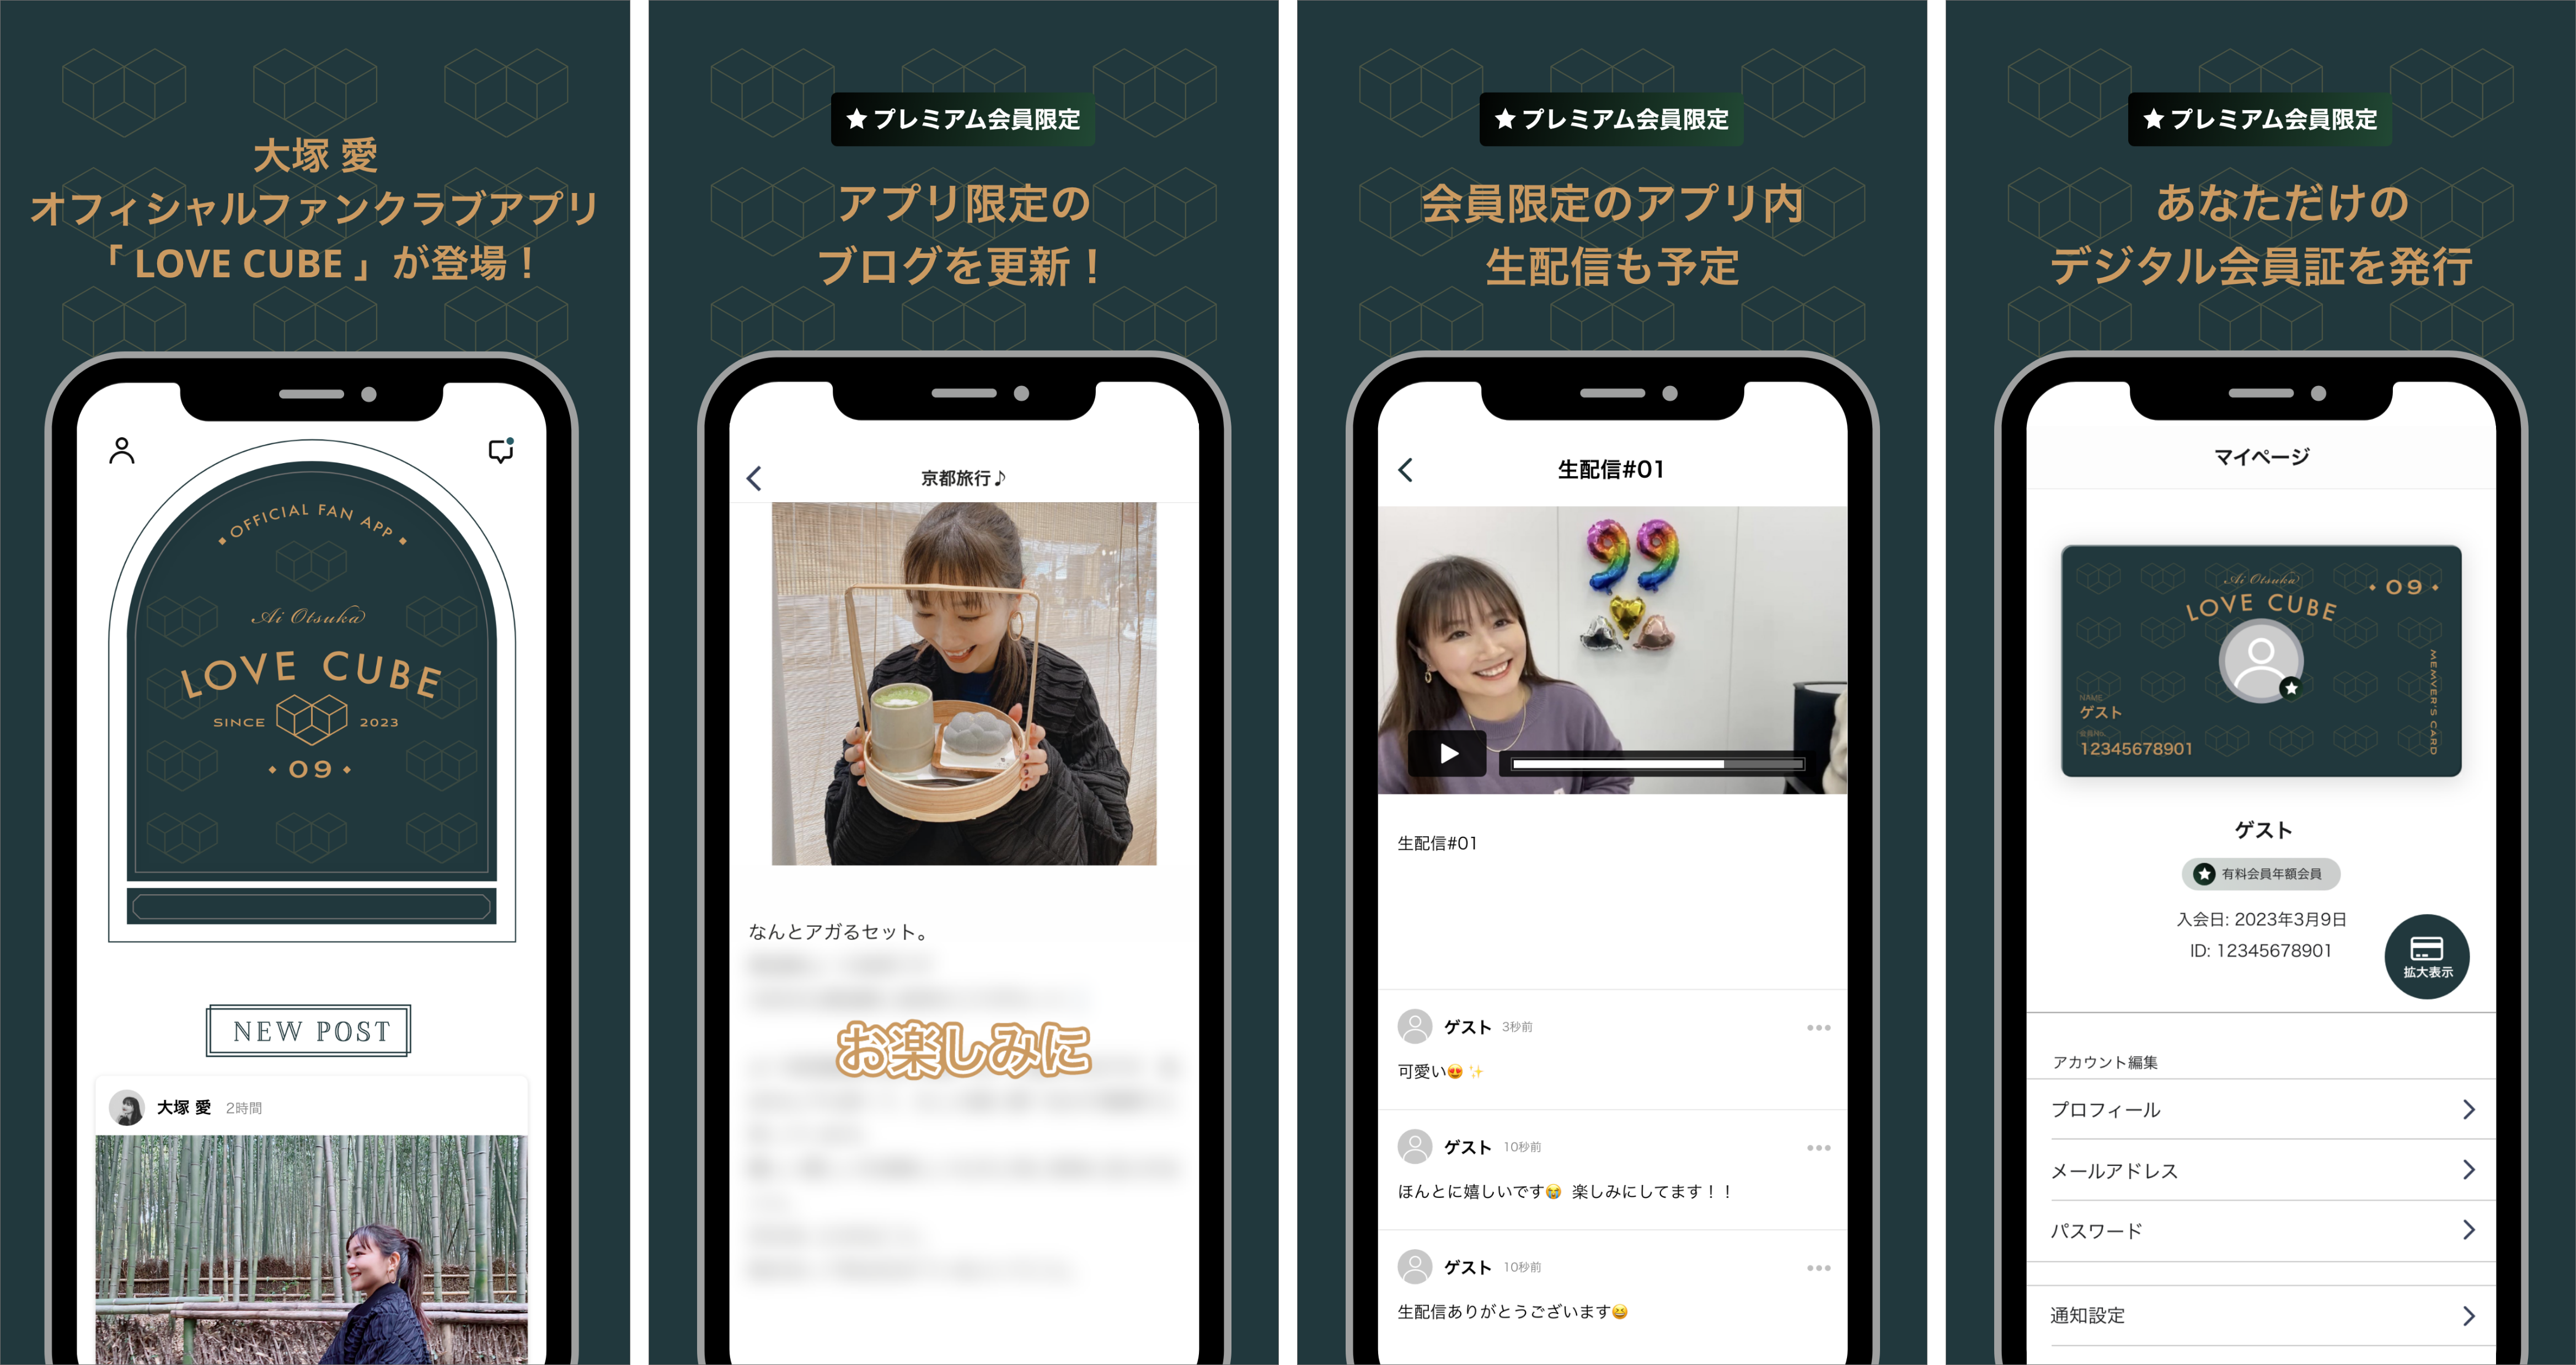 大塚 愛オフィシャルファンクラブアプリ「LOVE CUBE」をリリース 